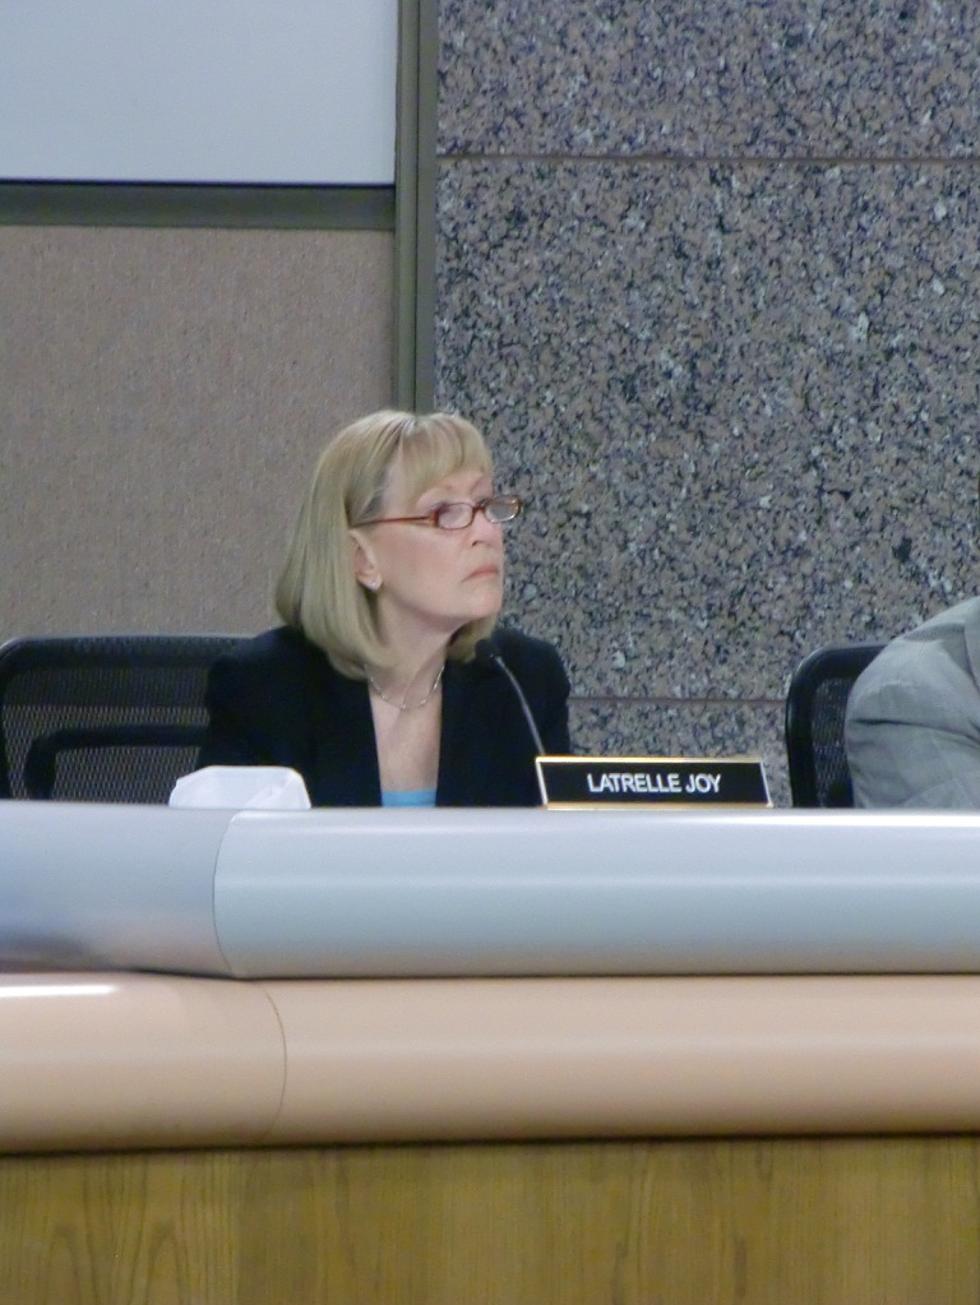 District 6 Councilwoman Latrelle Joy Dicusses New Annexations For Lubbock [AUDIO]